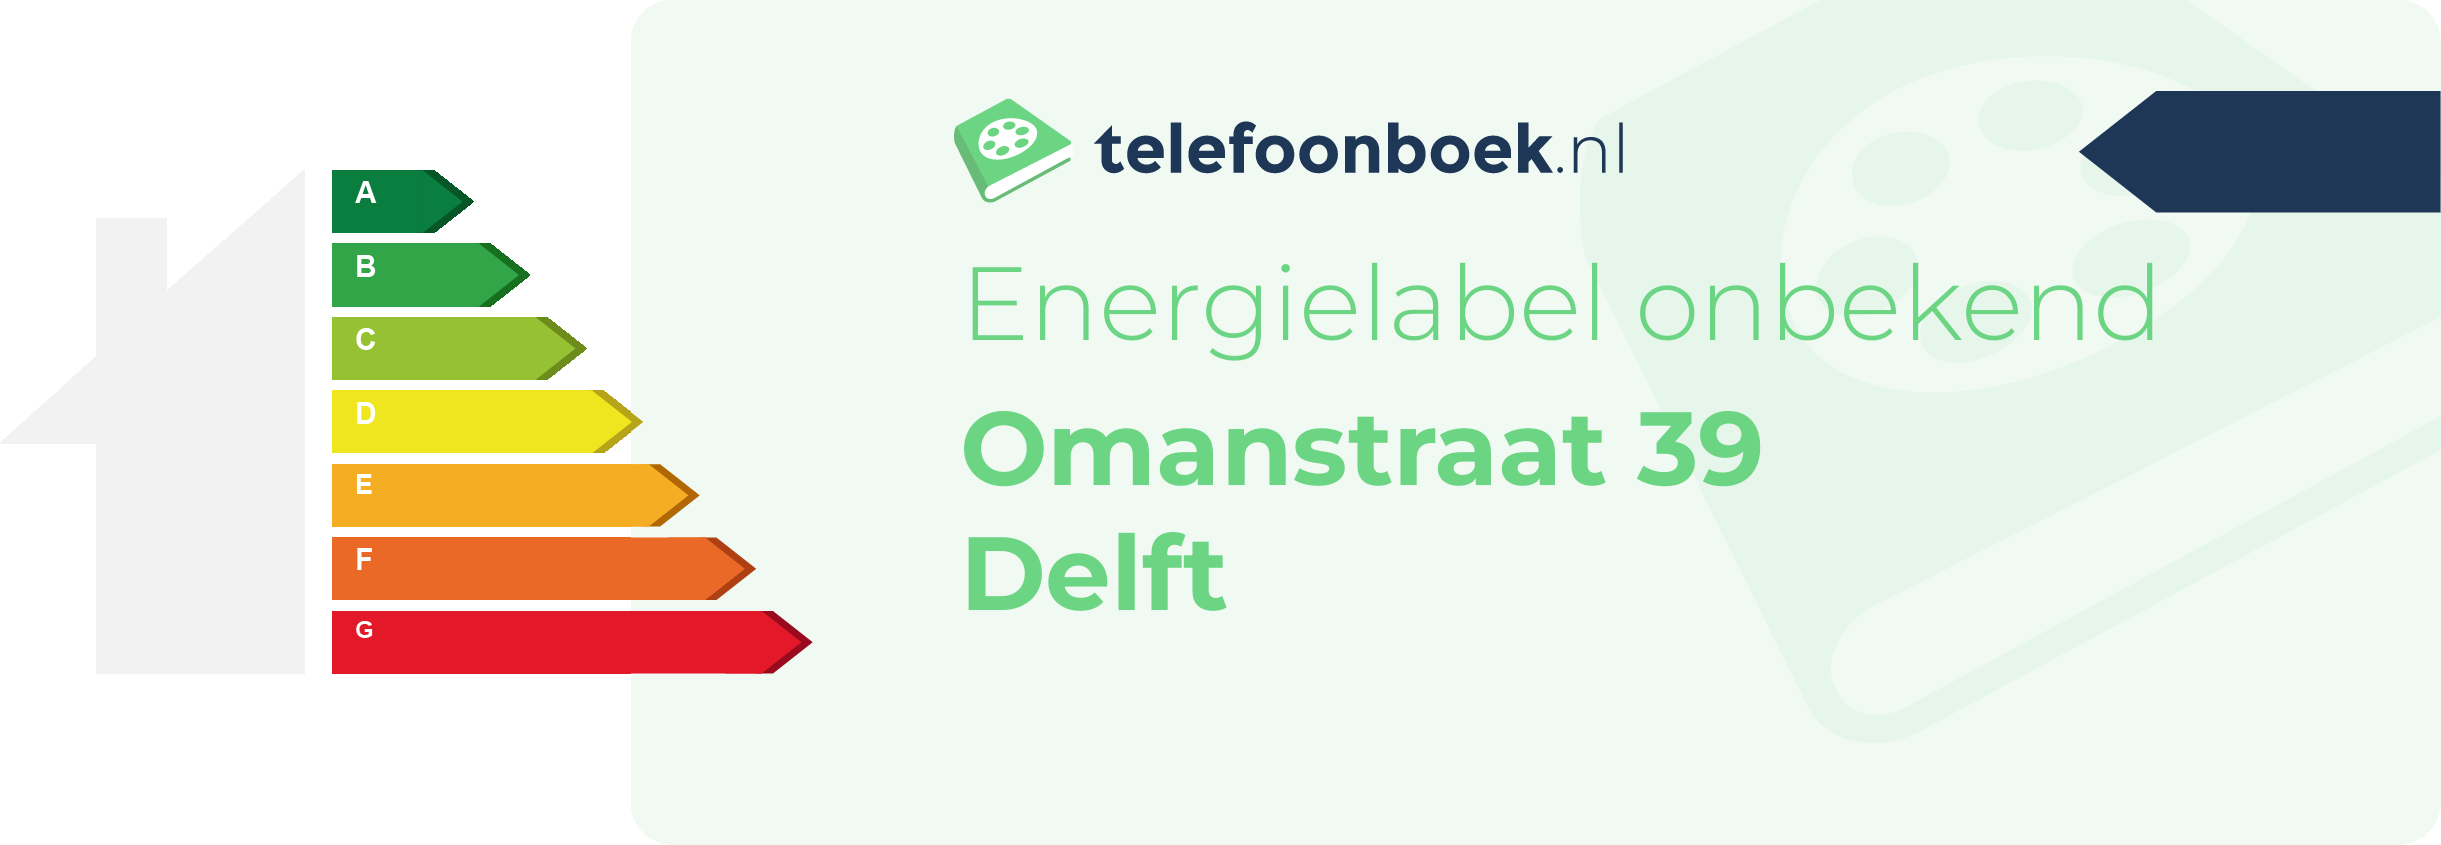 Energielabel Omanstraat 39 Delft